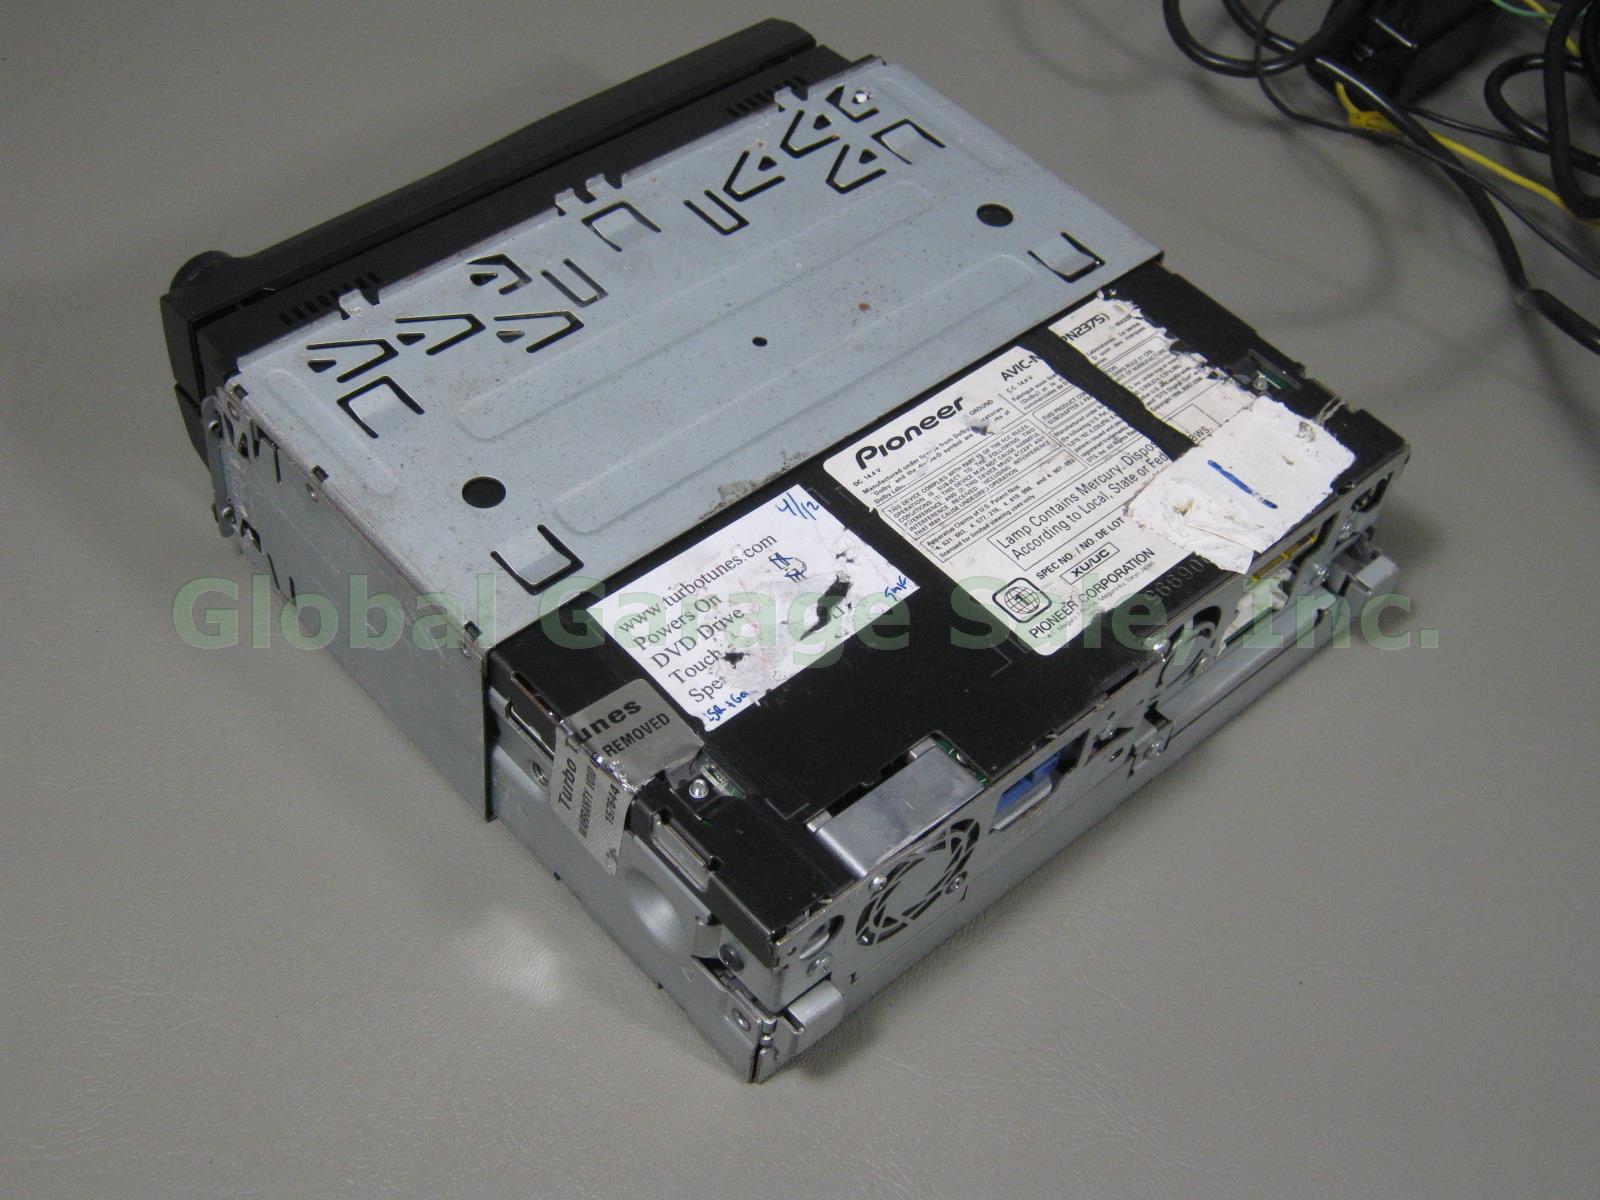 Pioneer AVIC-N4 7" DVD GPS Navigation Receiver Hide-Away GEX-P10XMT CD-BTB200 NR 2